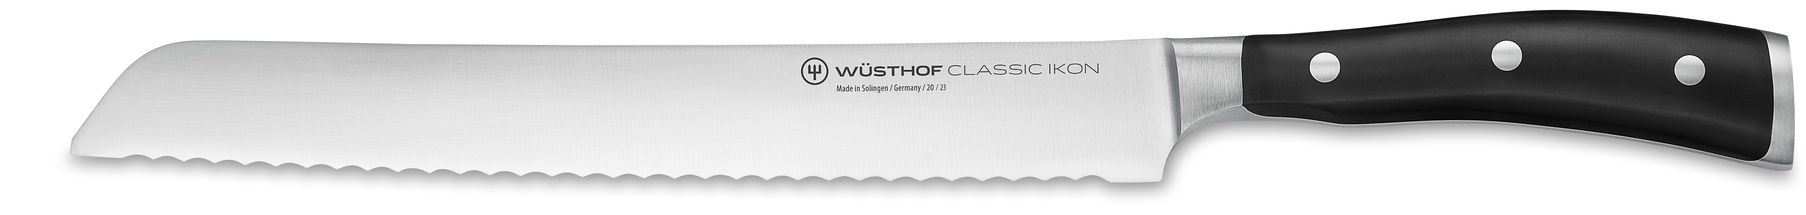 Couteau à pain Wusthof Classic Ikon 23 cm